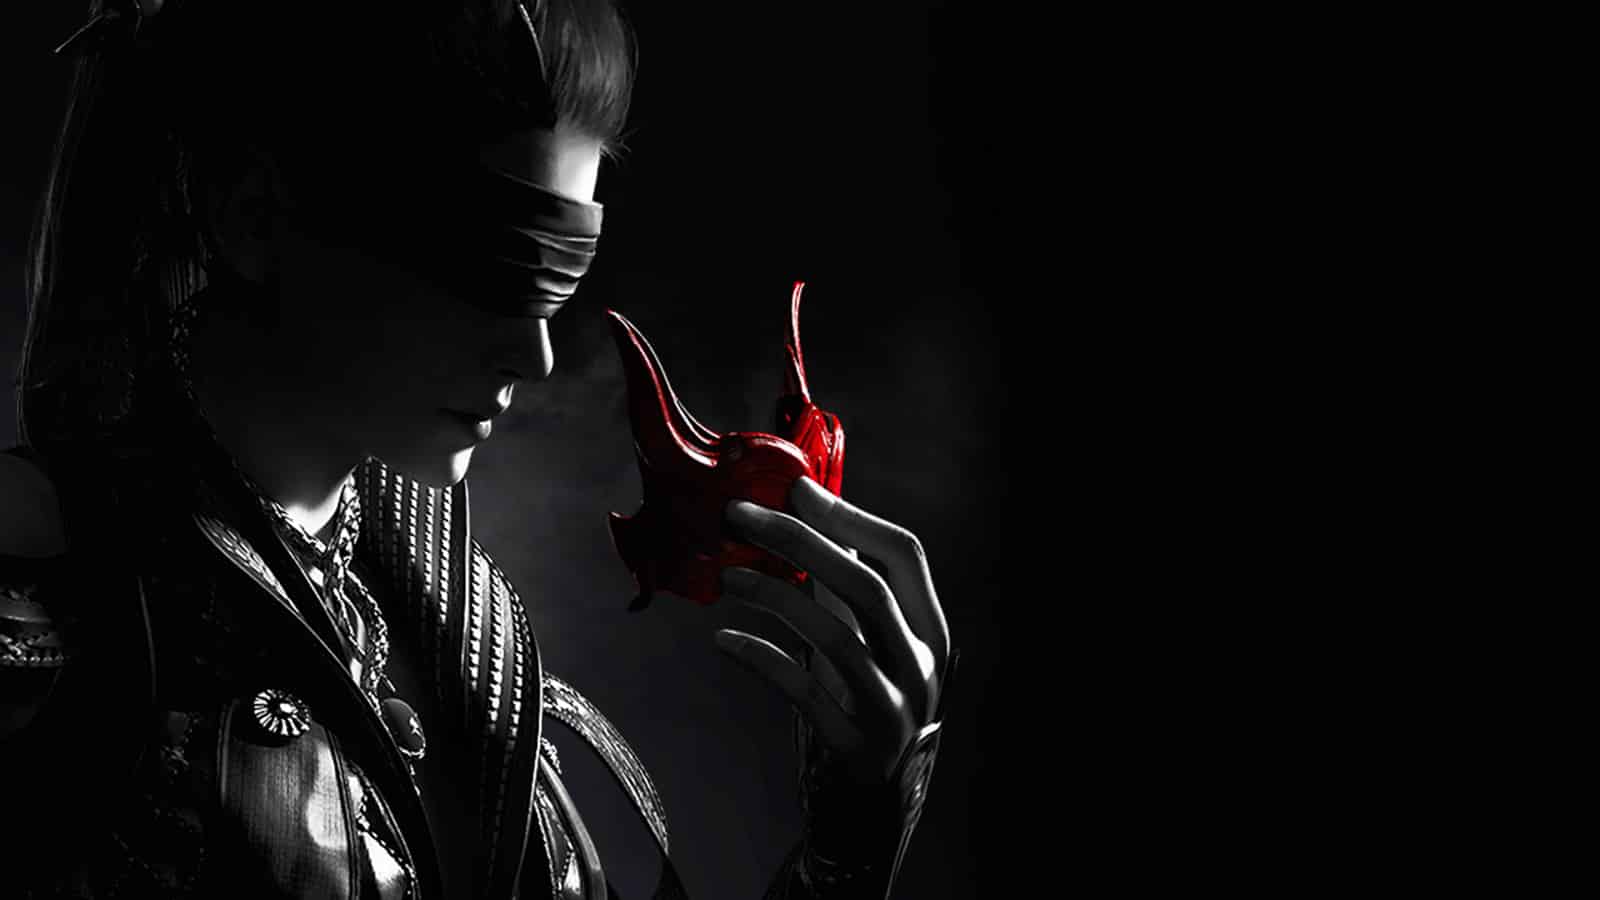 naraka bladepoint weibliche figur mit augenbinde in schwarz und weiß hält eine rote oni-maske vor ihr gesicht